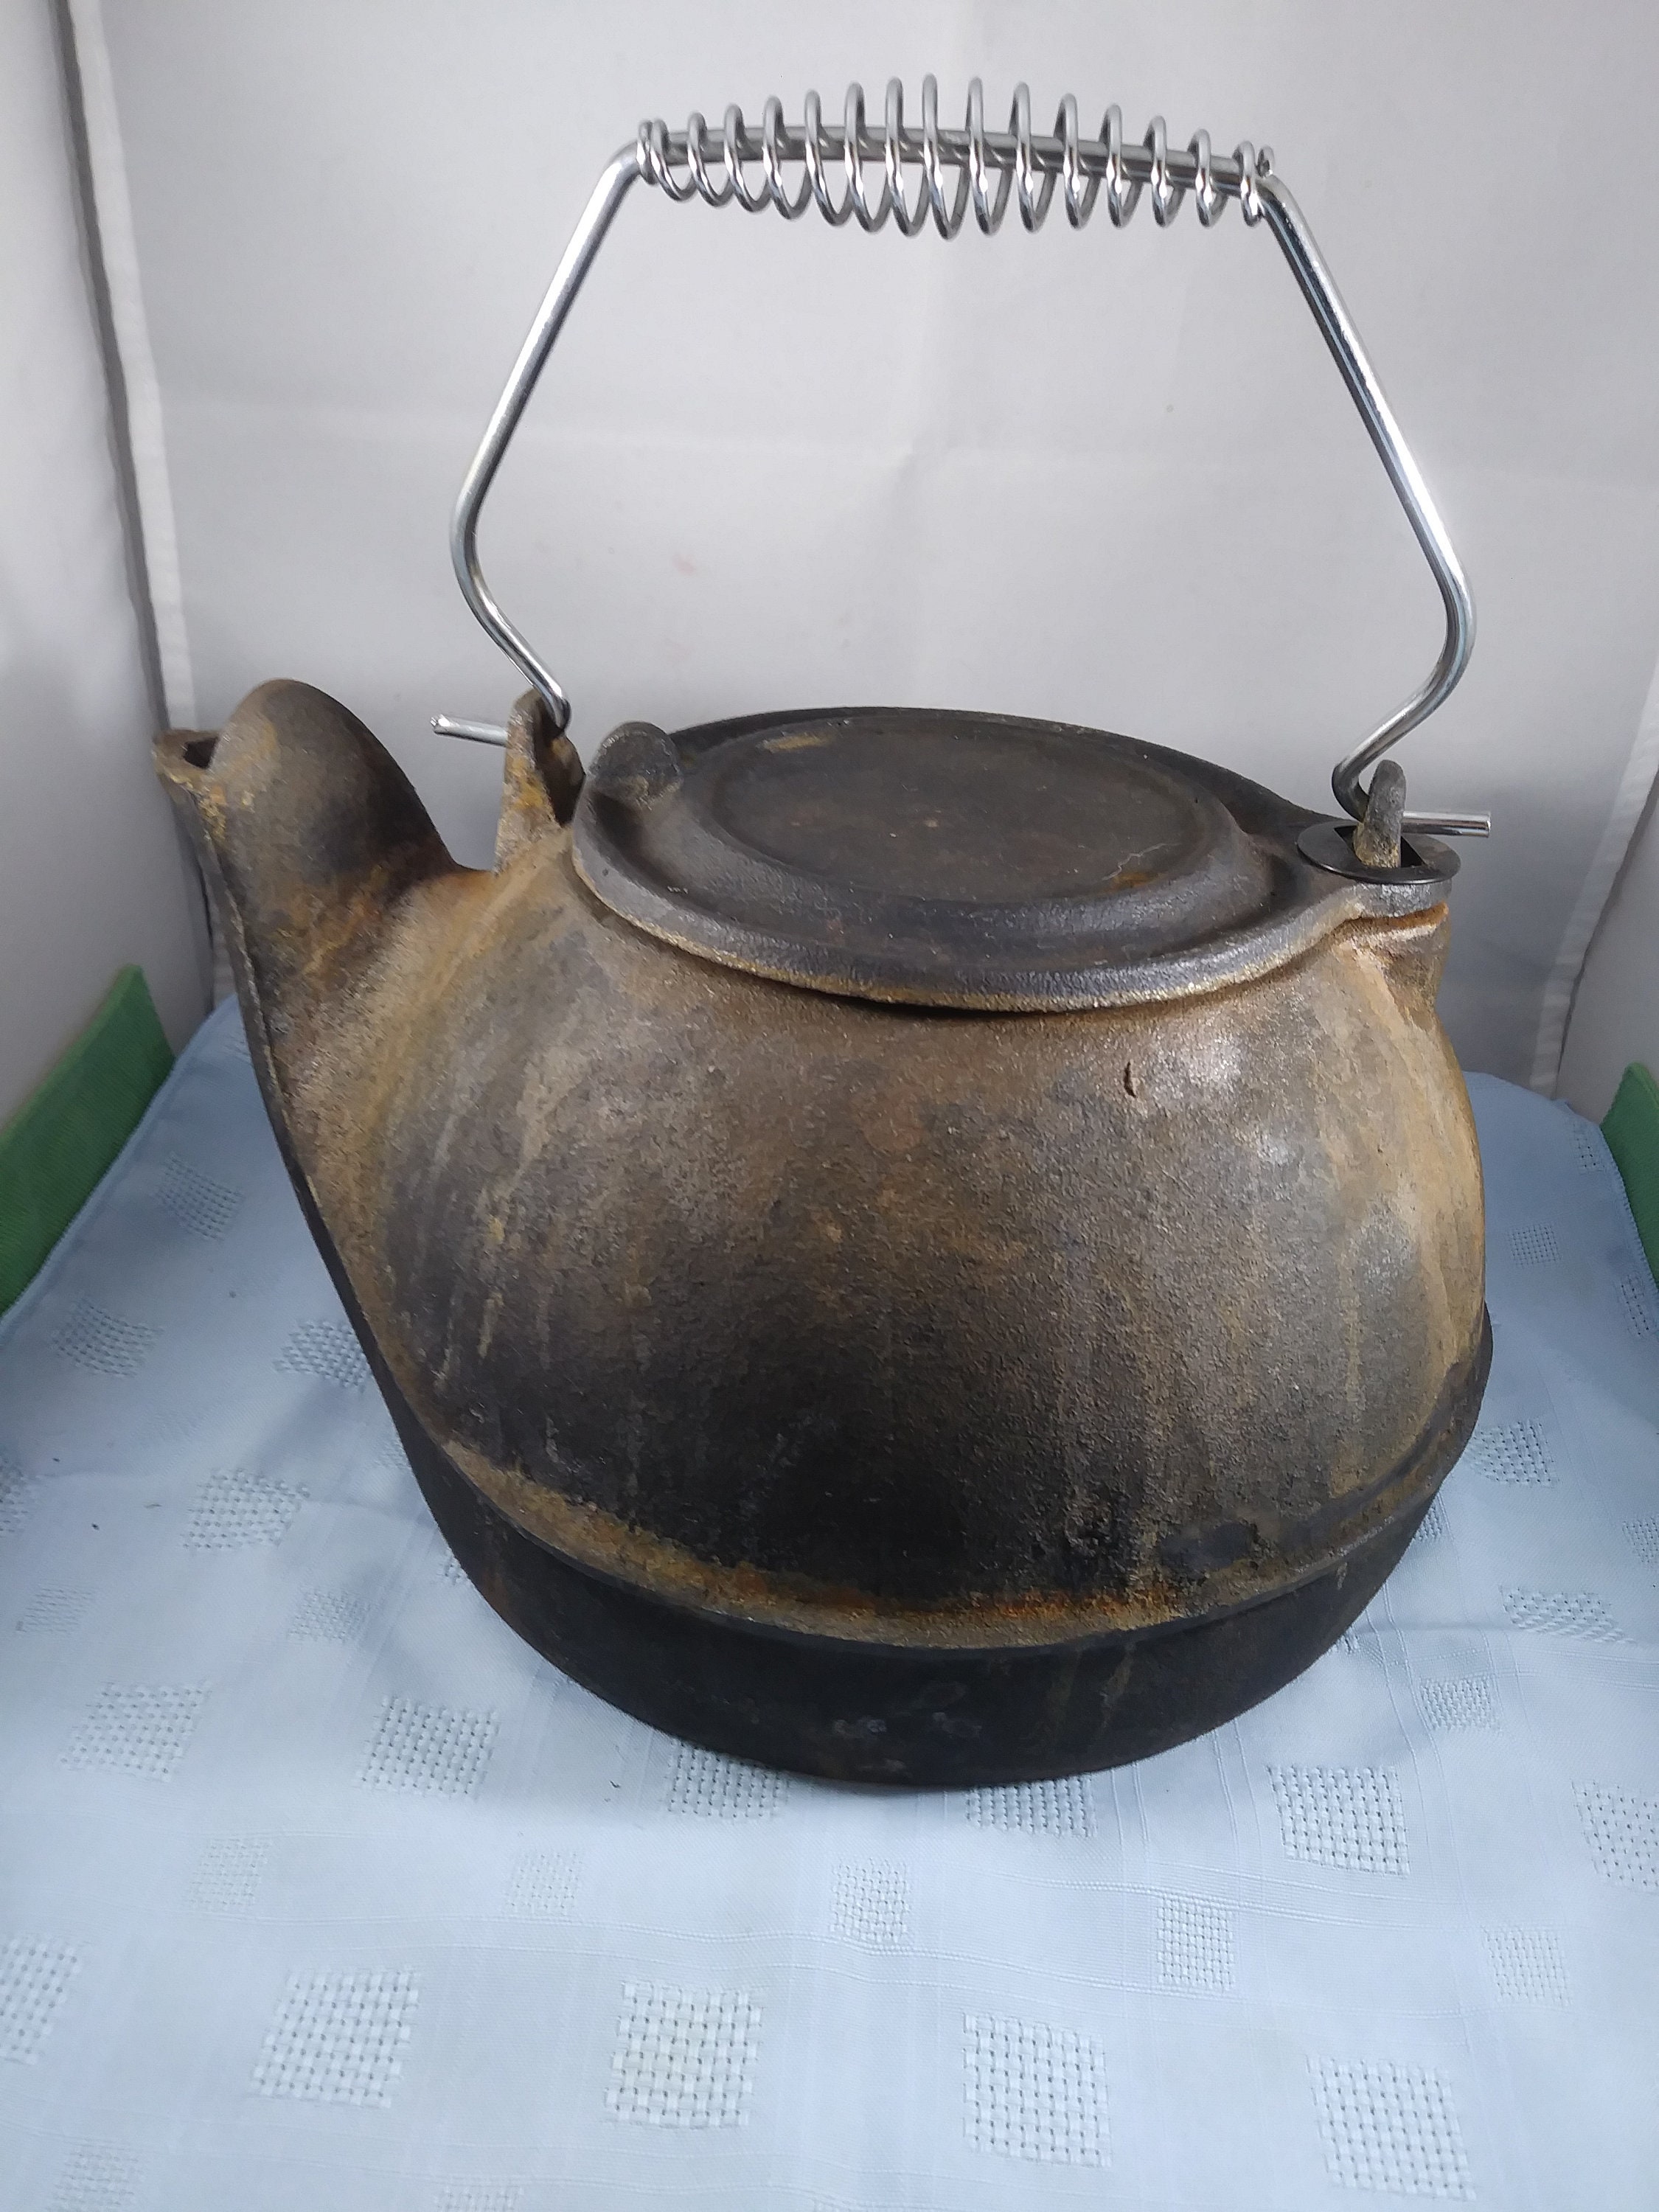 Antique Vintage Cast Iron Teapot Coffee Pot Kettle Swivel Lid